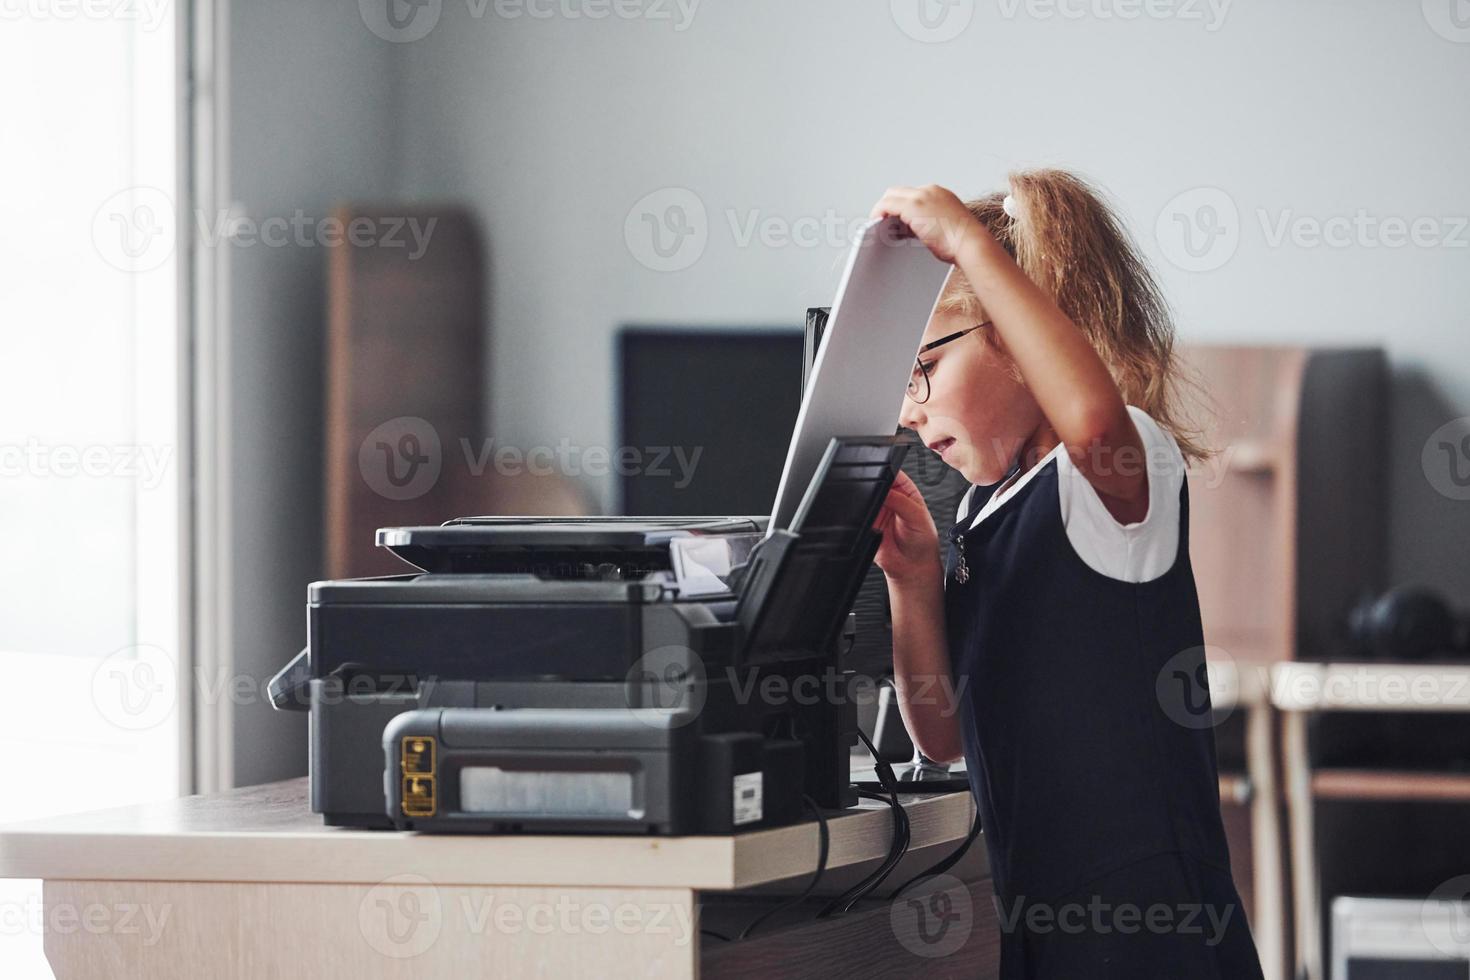 processus de travail. une fille tient du papier et le met dans l'imprimante photo